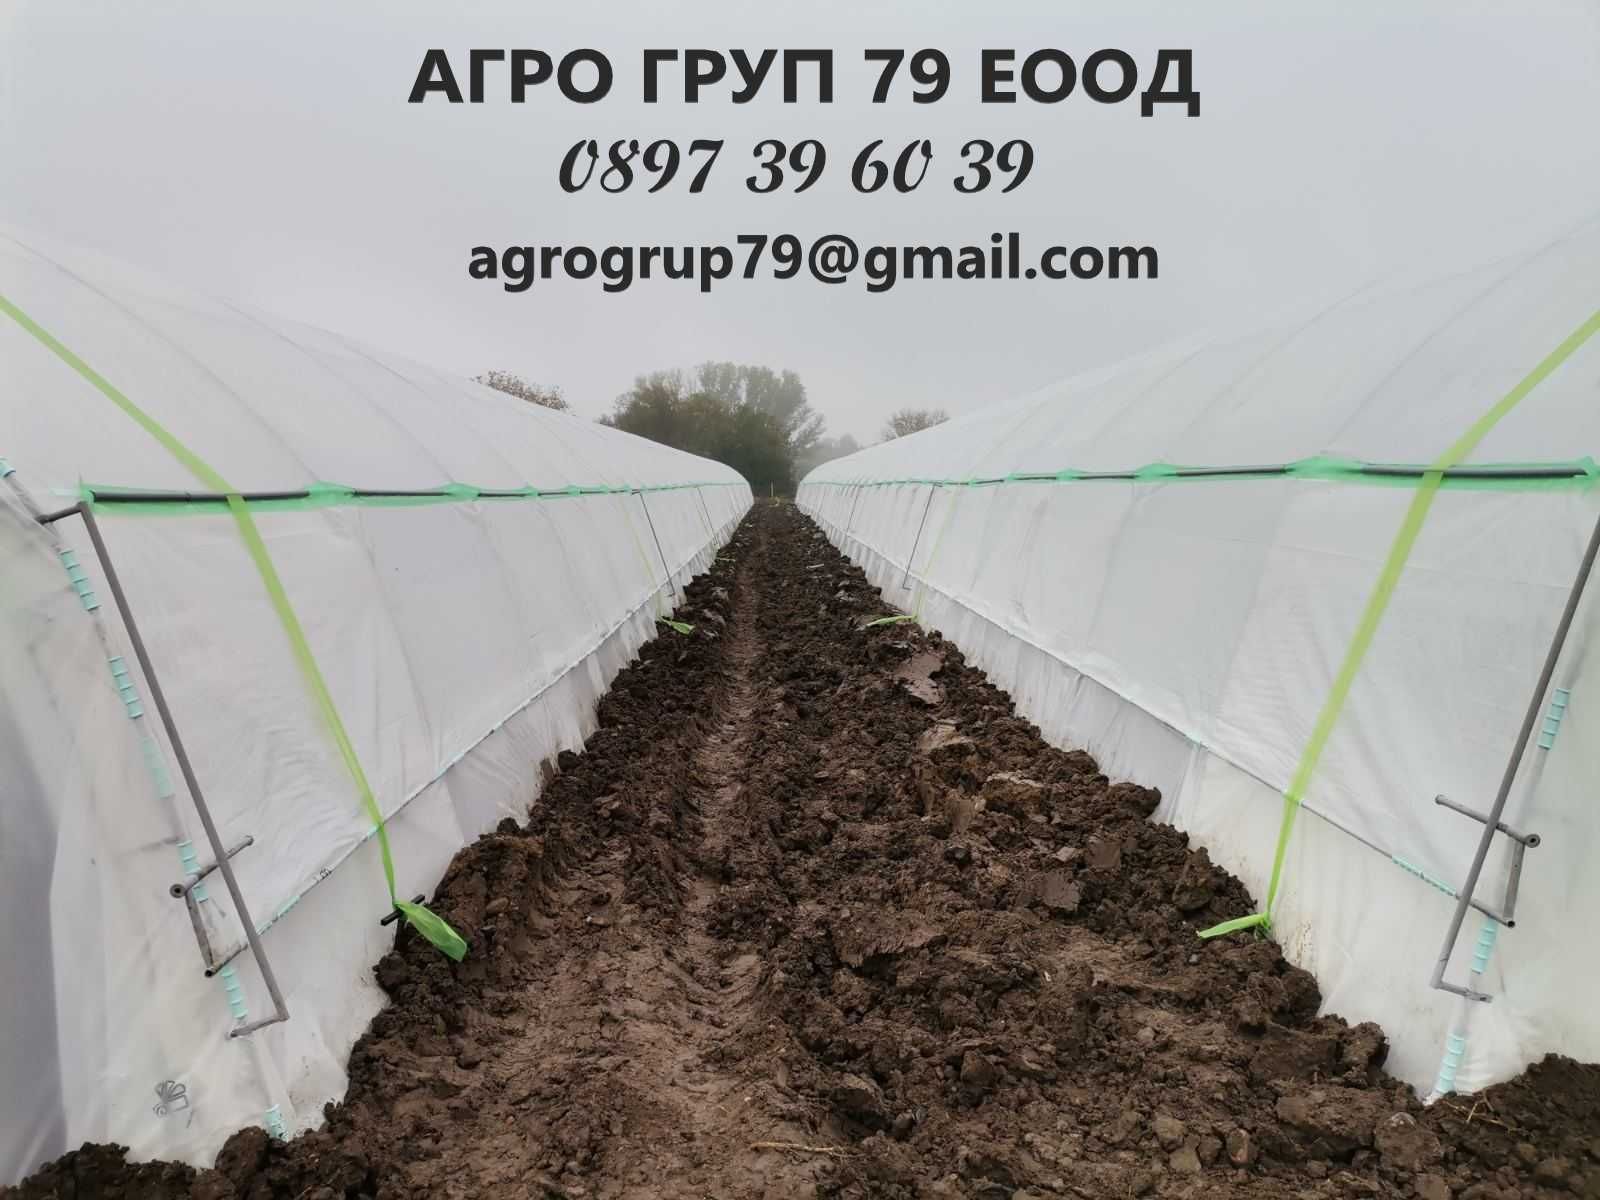 Полиетиленови оранжерии от АГРО ГРУП 79 с най-добрите цени в бранша